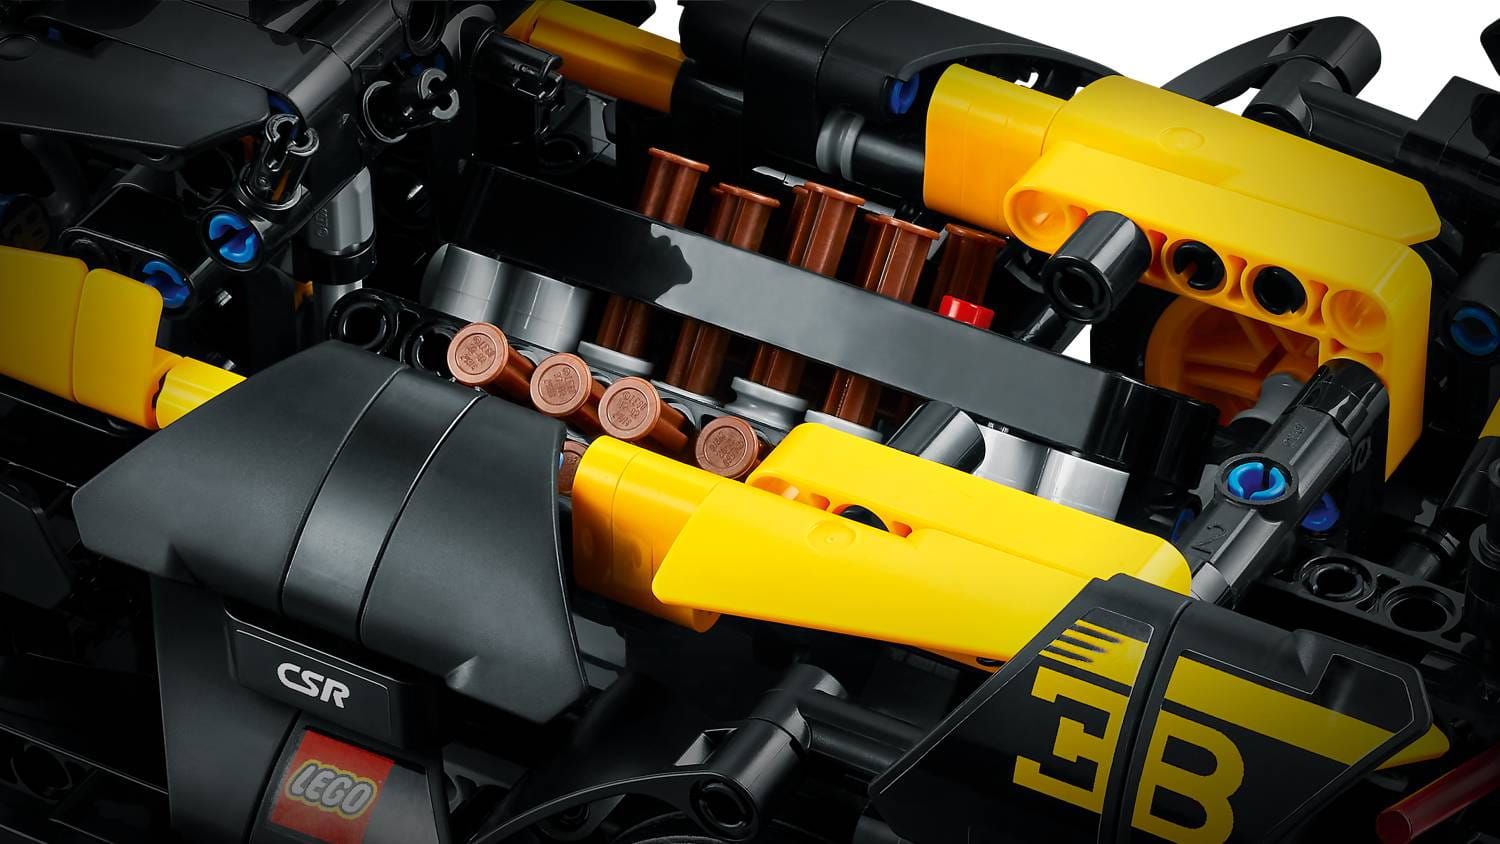 LEGO® Technic Auto Bugatti Bolide